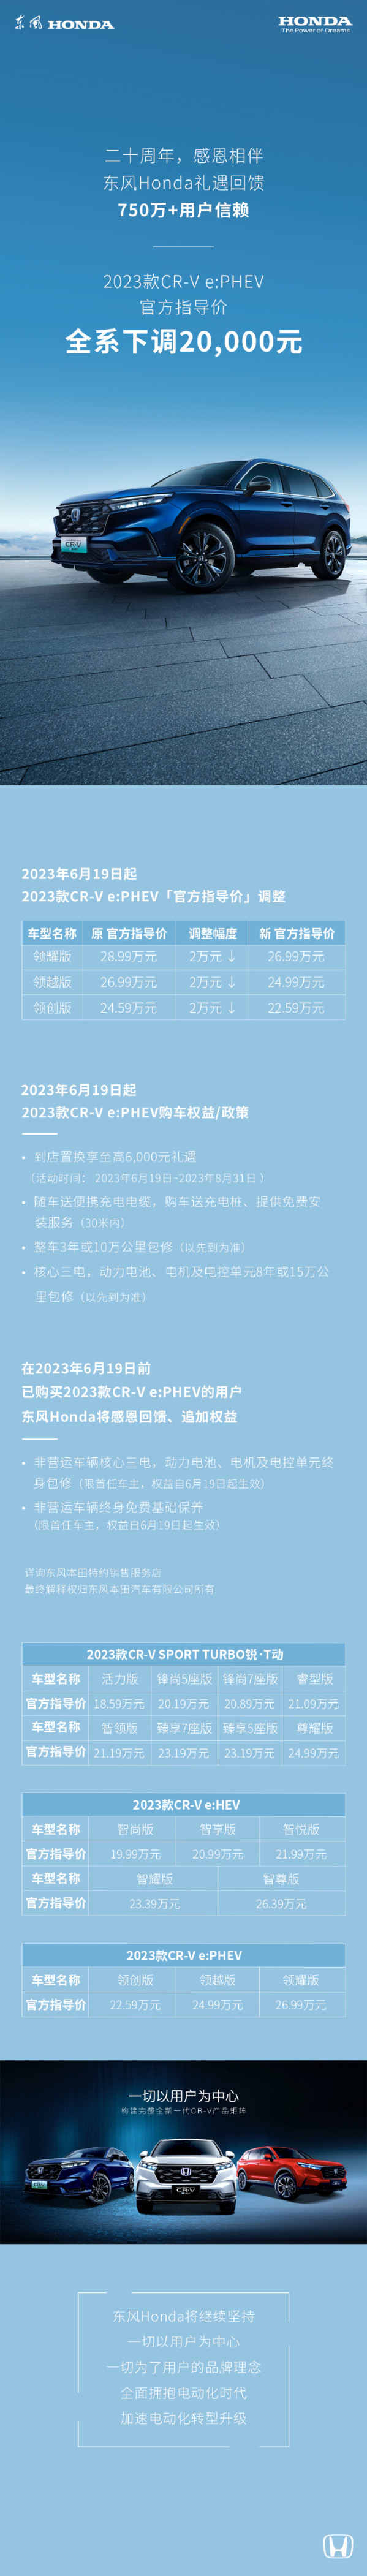 东风本田CR-V e:PHEV全系降价2万元 现售22.59万元起